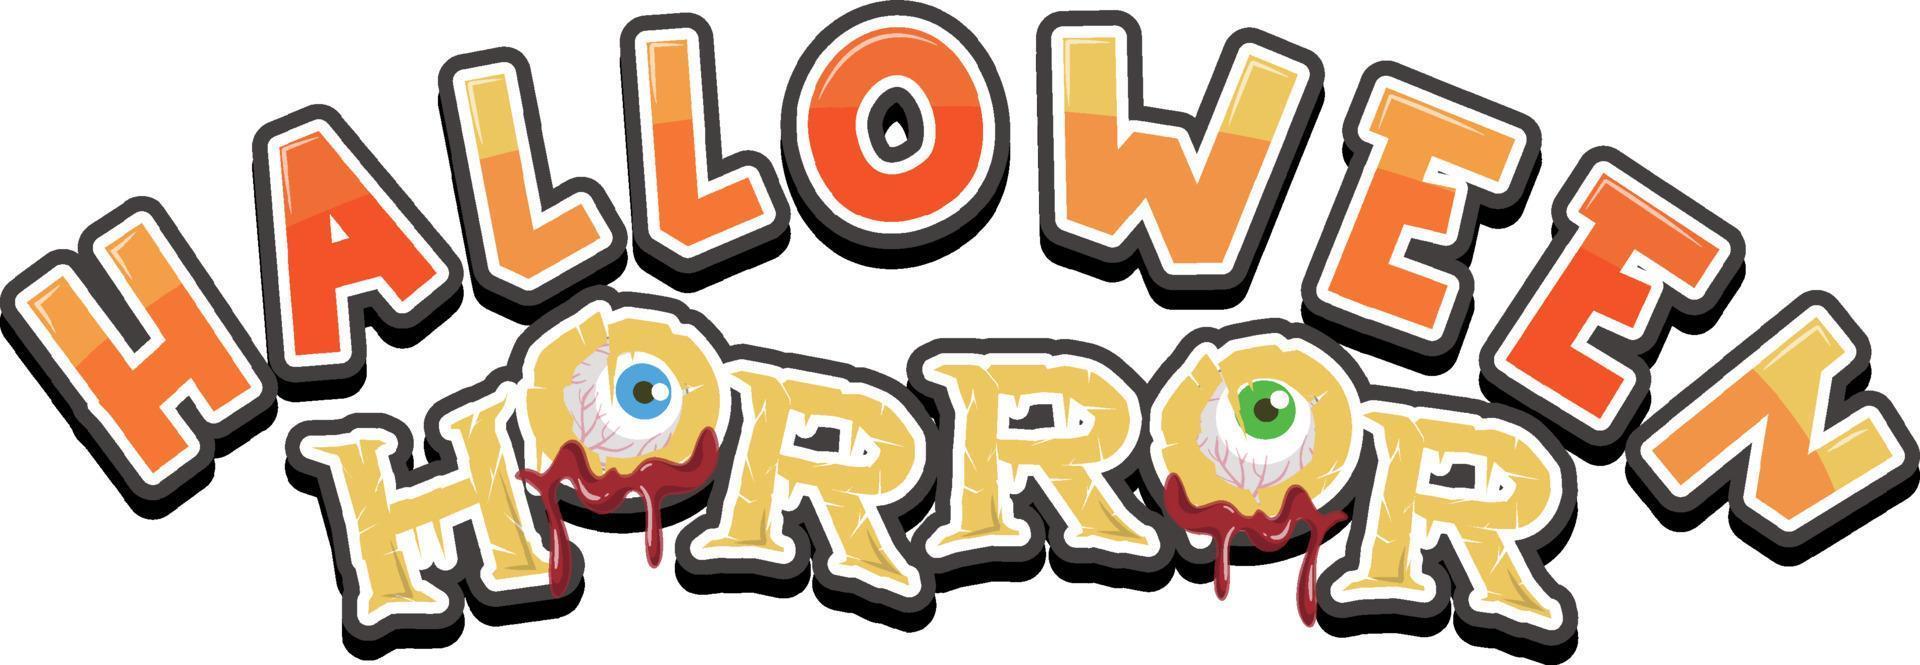 Halloween Horror Wort Logo vektor